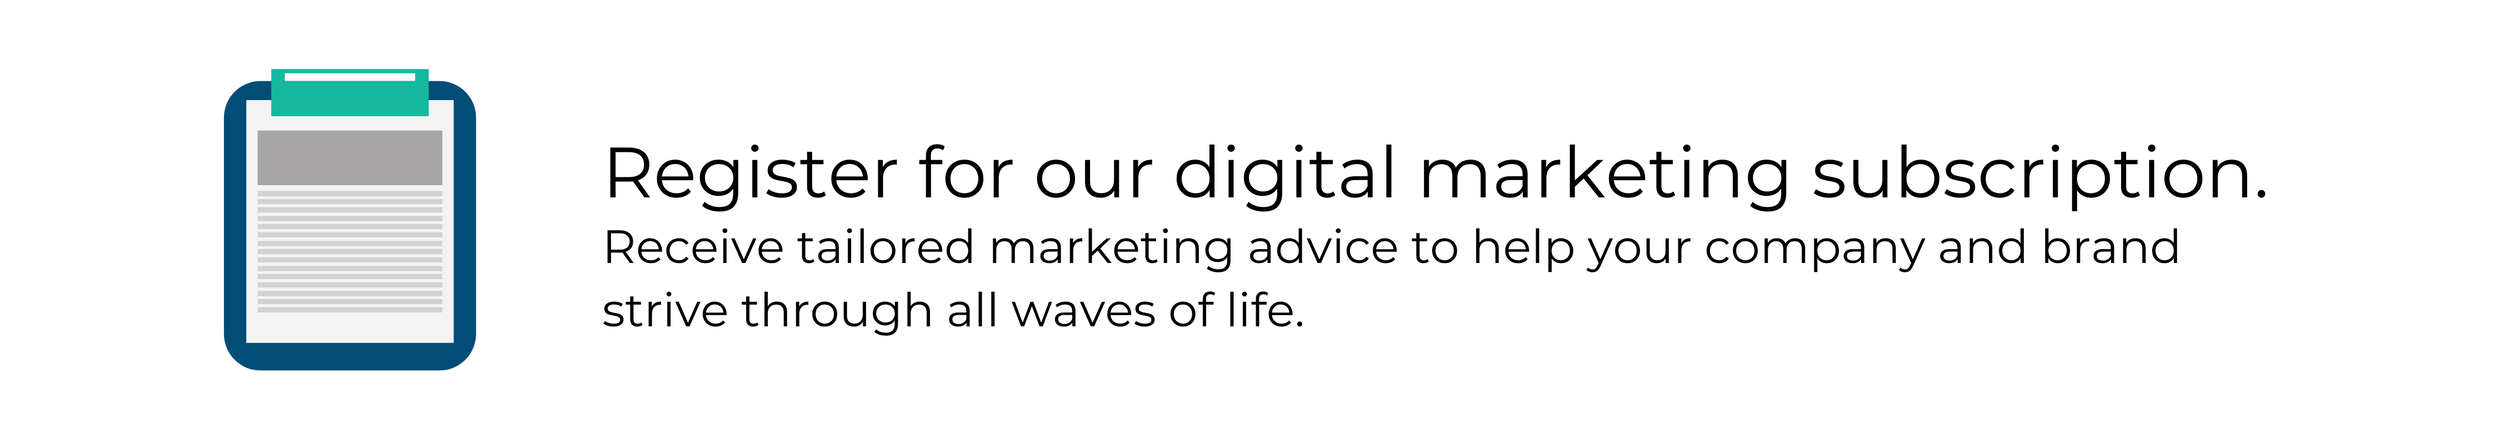 Register For Digital Marketing.png